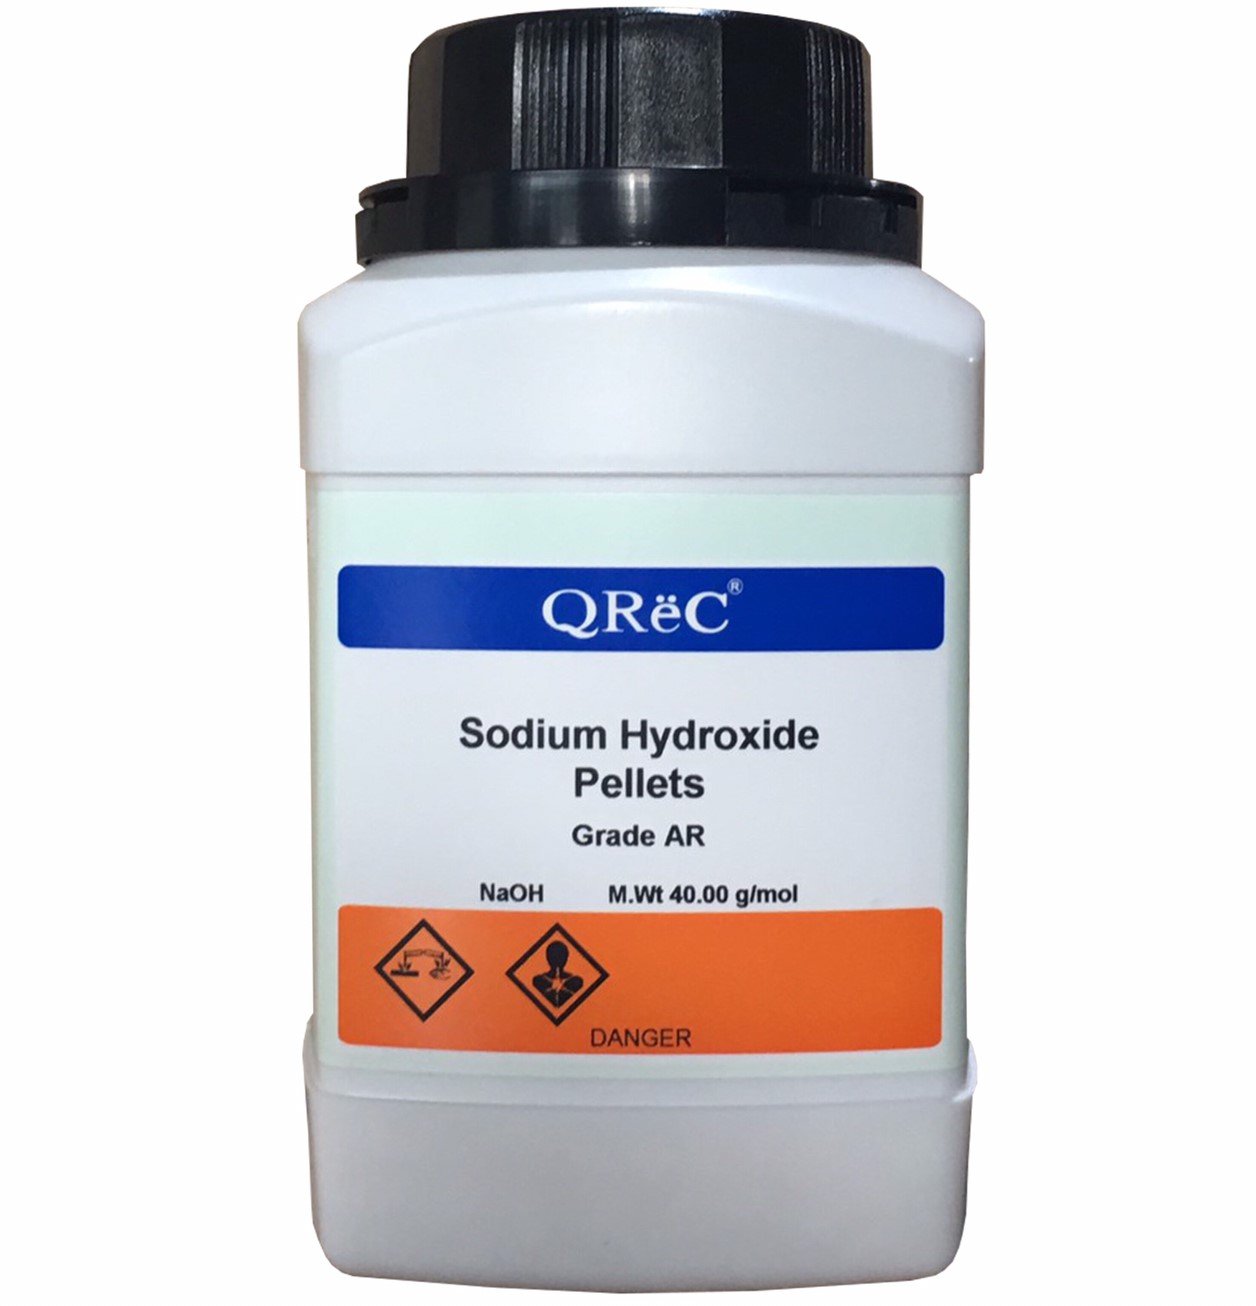 S24000-1000.0 - Sodium Hydroxide Pellets, ACS Grade, 1 Kilogram